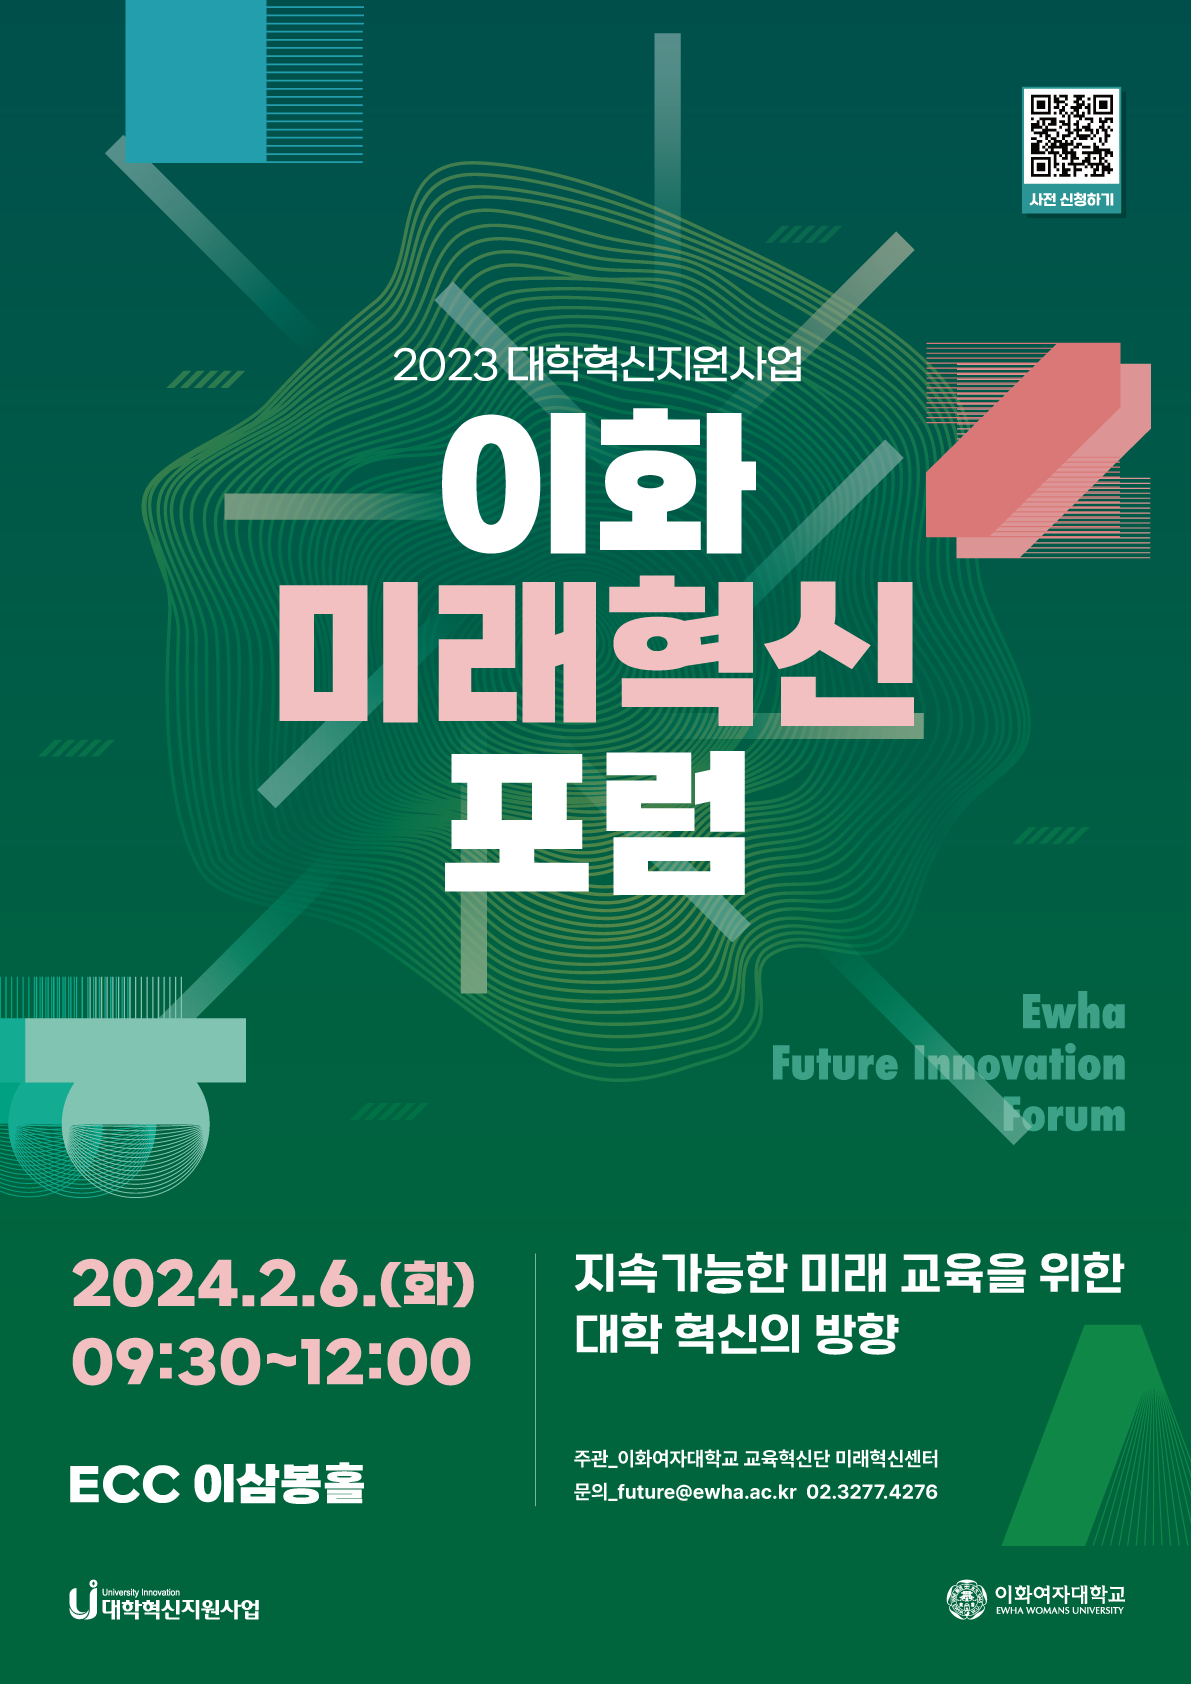 2023 대학혁신지원사업 이화 미래혁신 포럼 개최: 2024. 2. 6.(화) 9:30~12:00, ECC 이삼봉홀